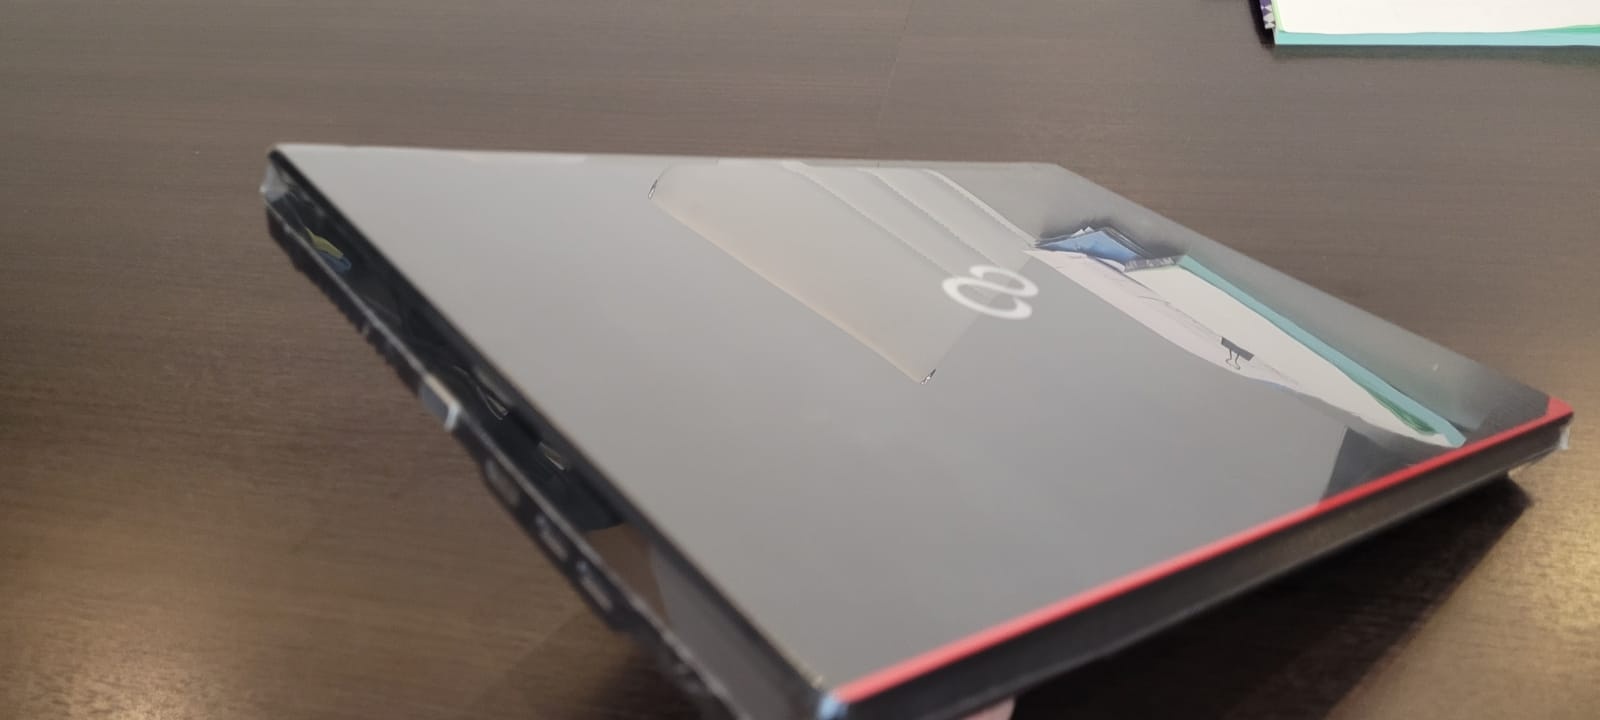 Notebook Fujitsu Lifebook A574 Core I5 2.7Ghz (8Gb/SSD 256 Gb) 15.6